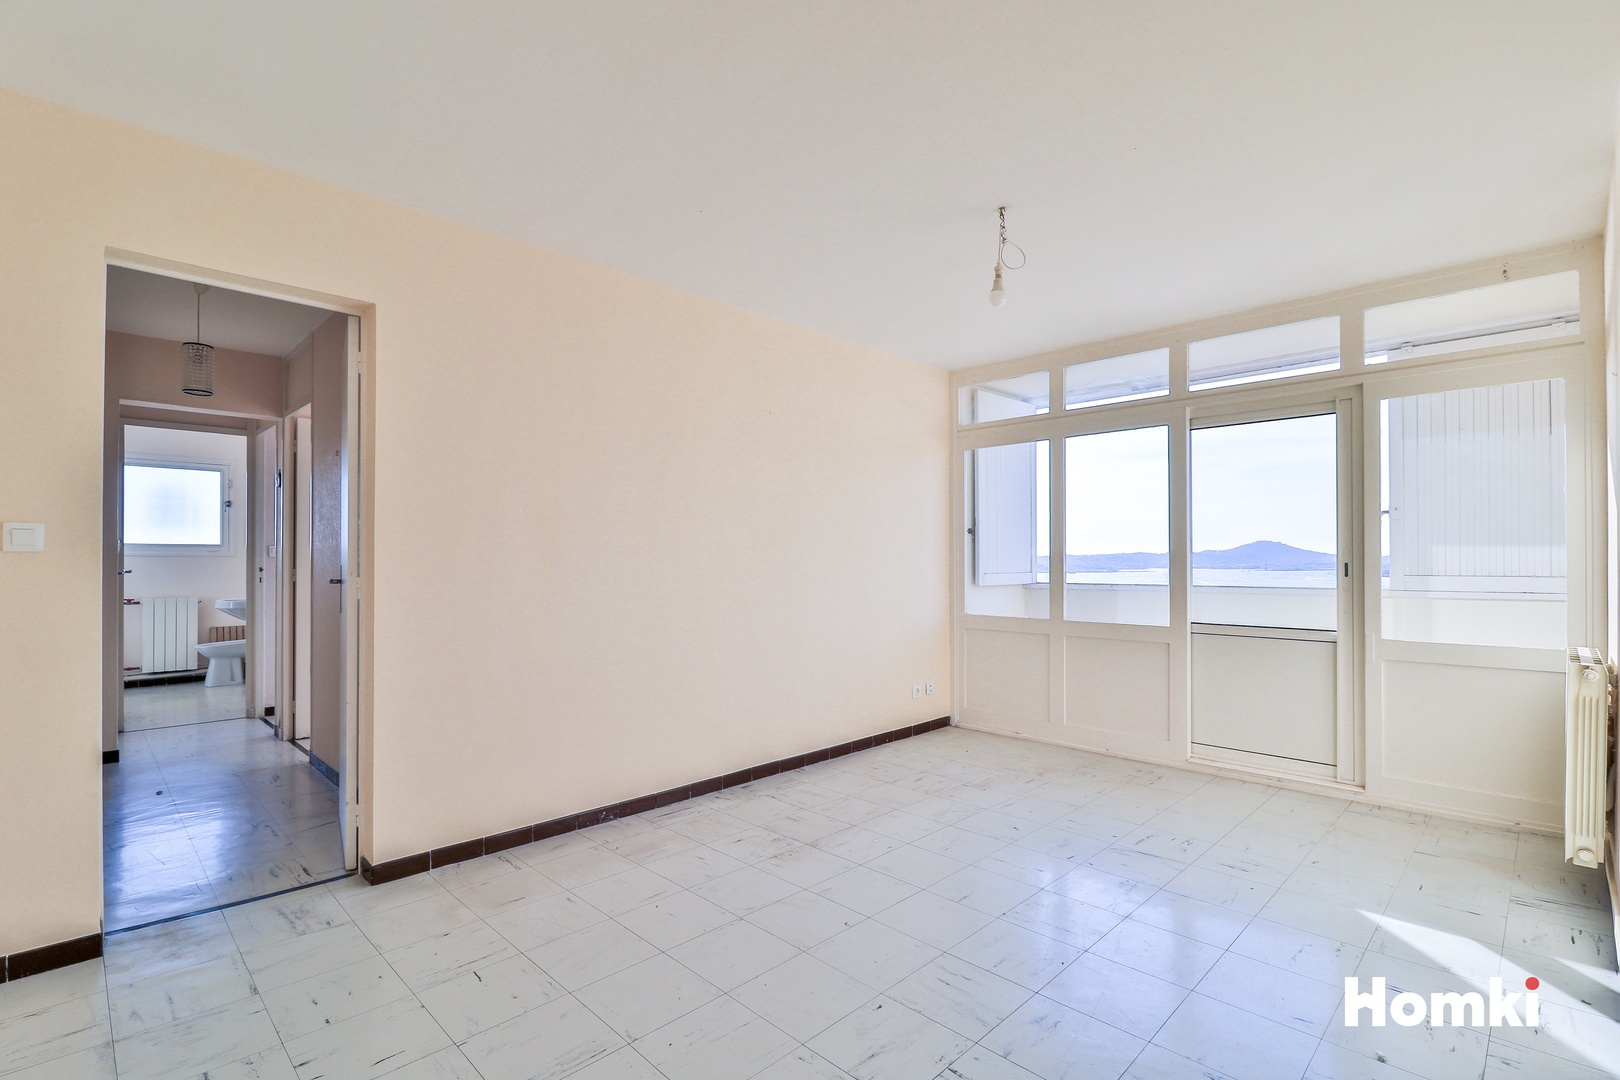 Homki - Vente Appartement  de 72.0 m² à Toulon 83000